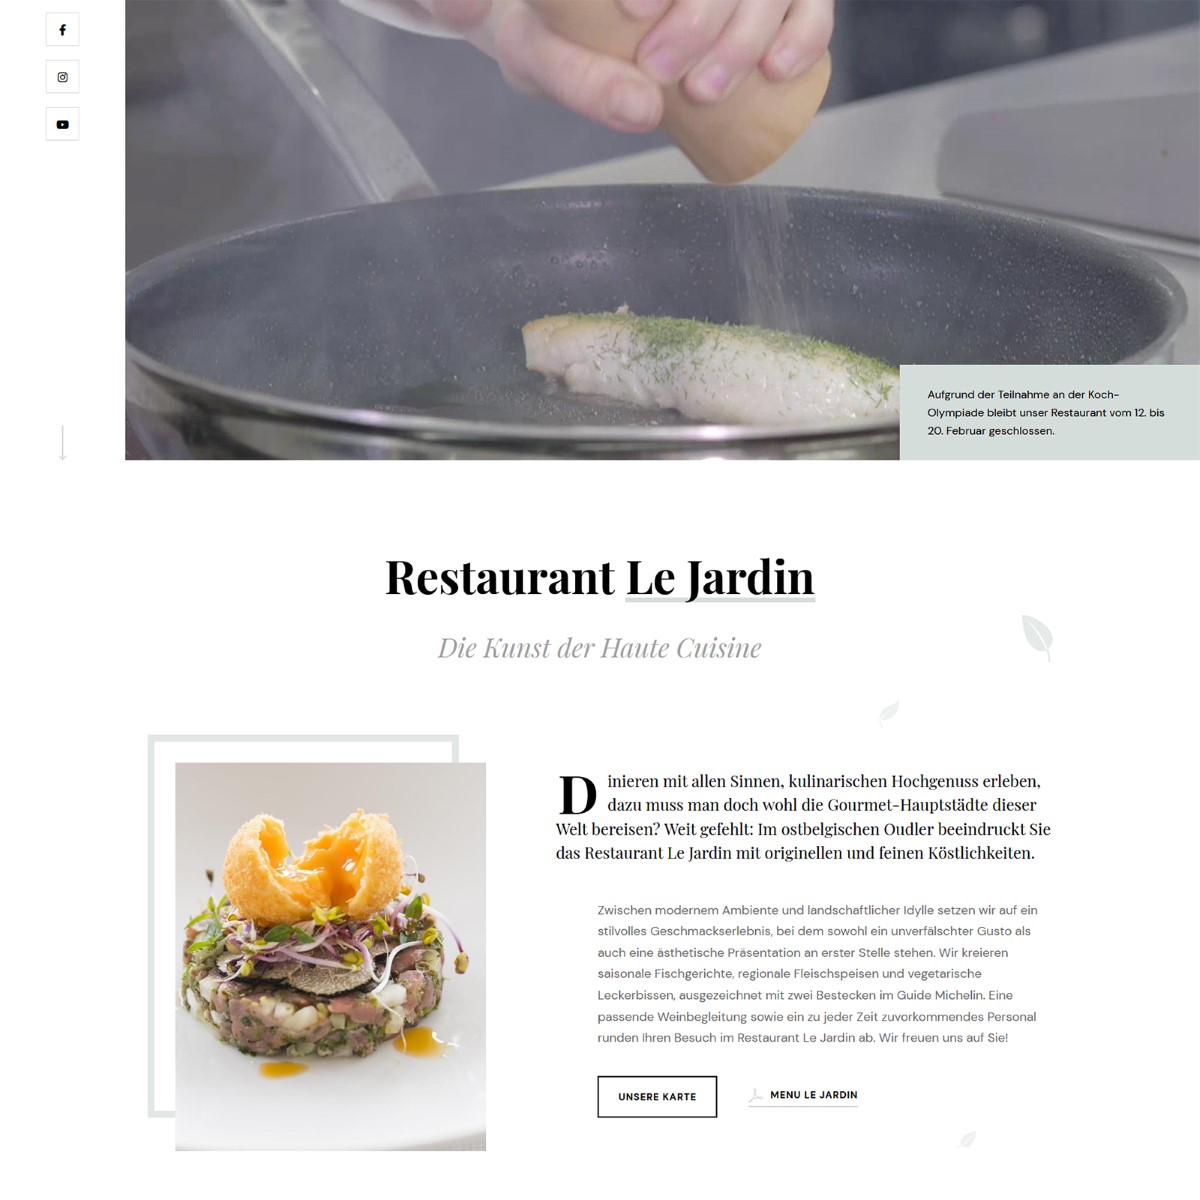 Mise en page sobre - Le design élégant reflète le côté raffiné des plats servis au restaurant Le Jardin.